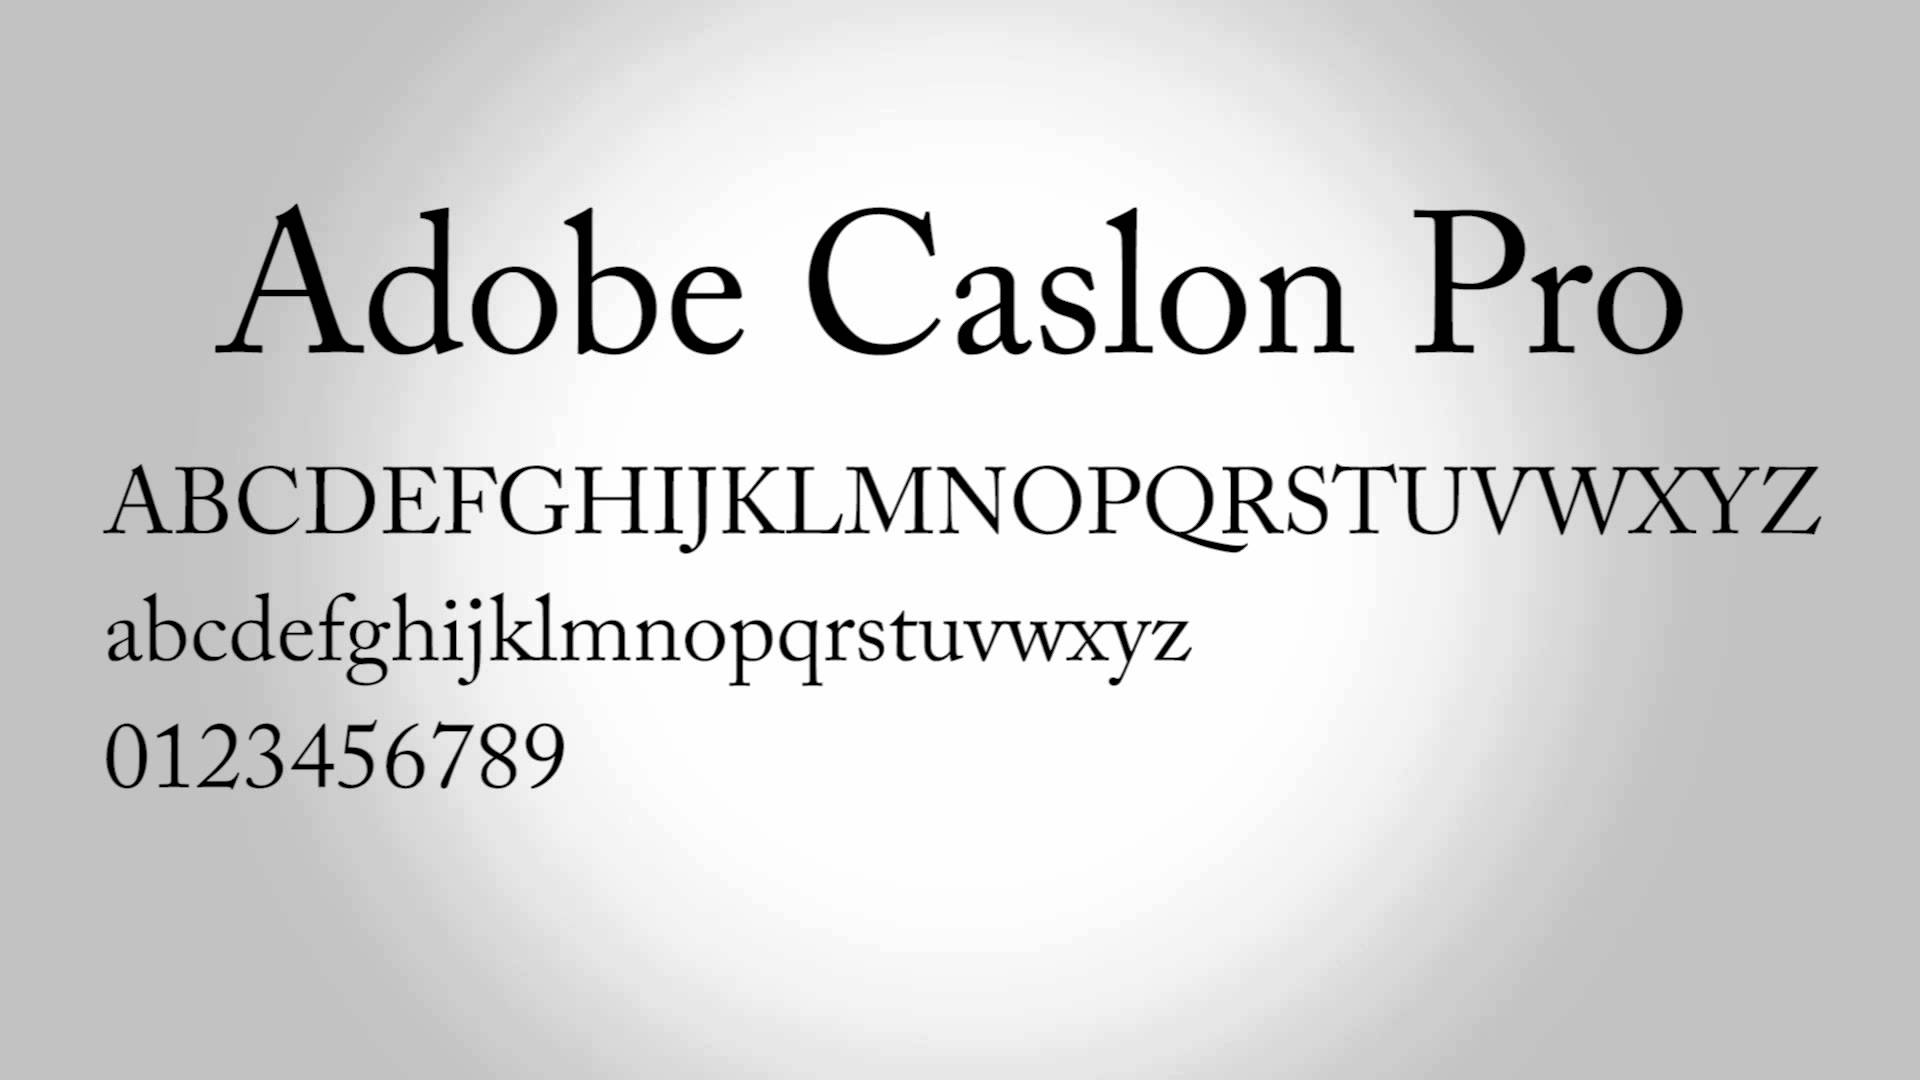 Adobe Caslon Pro Free Font - serif